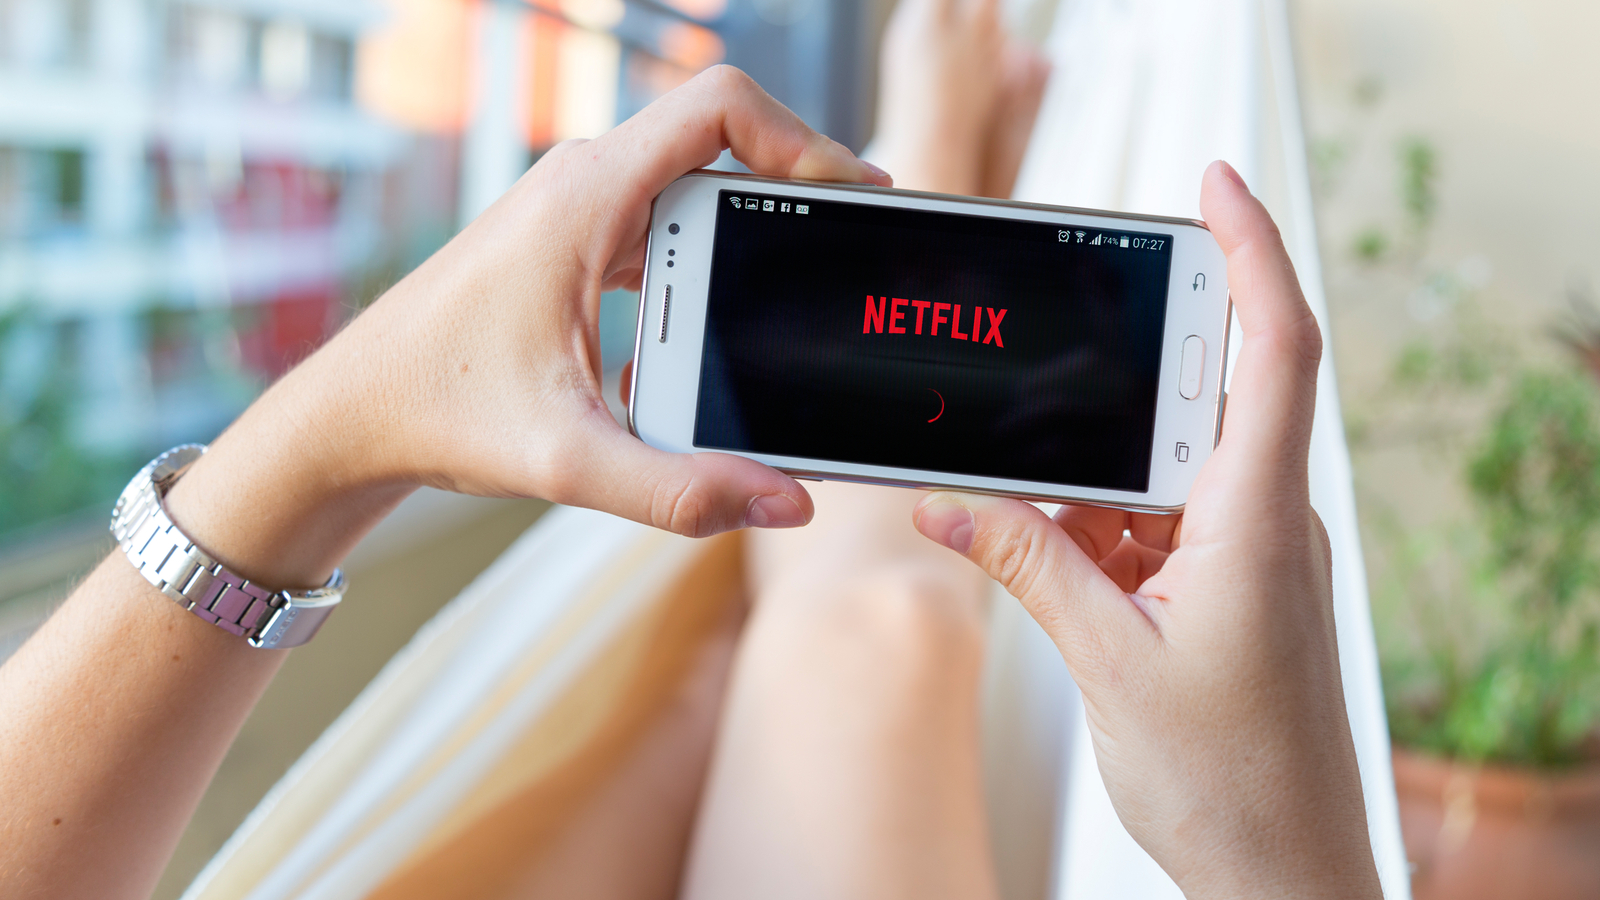 De nombreux clients Bouygues Telecom constatent être abonnés à Netflix à leur insu